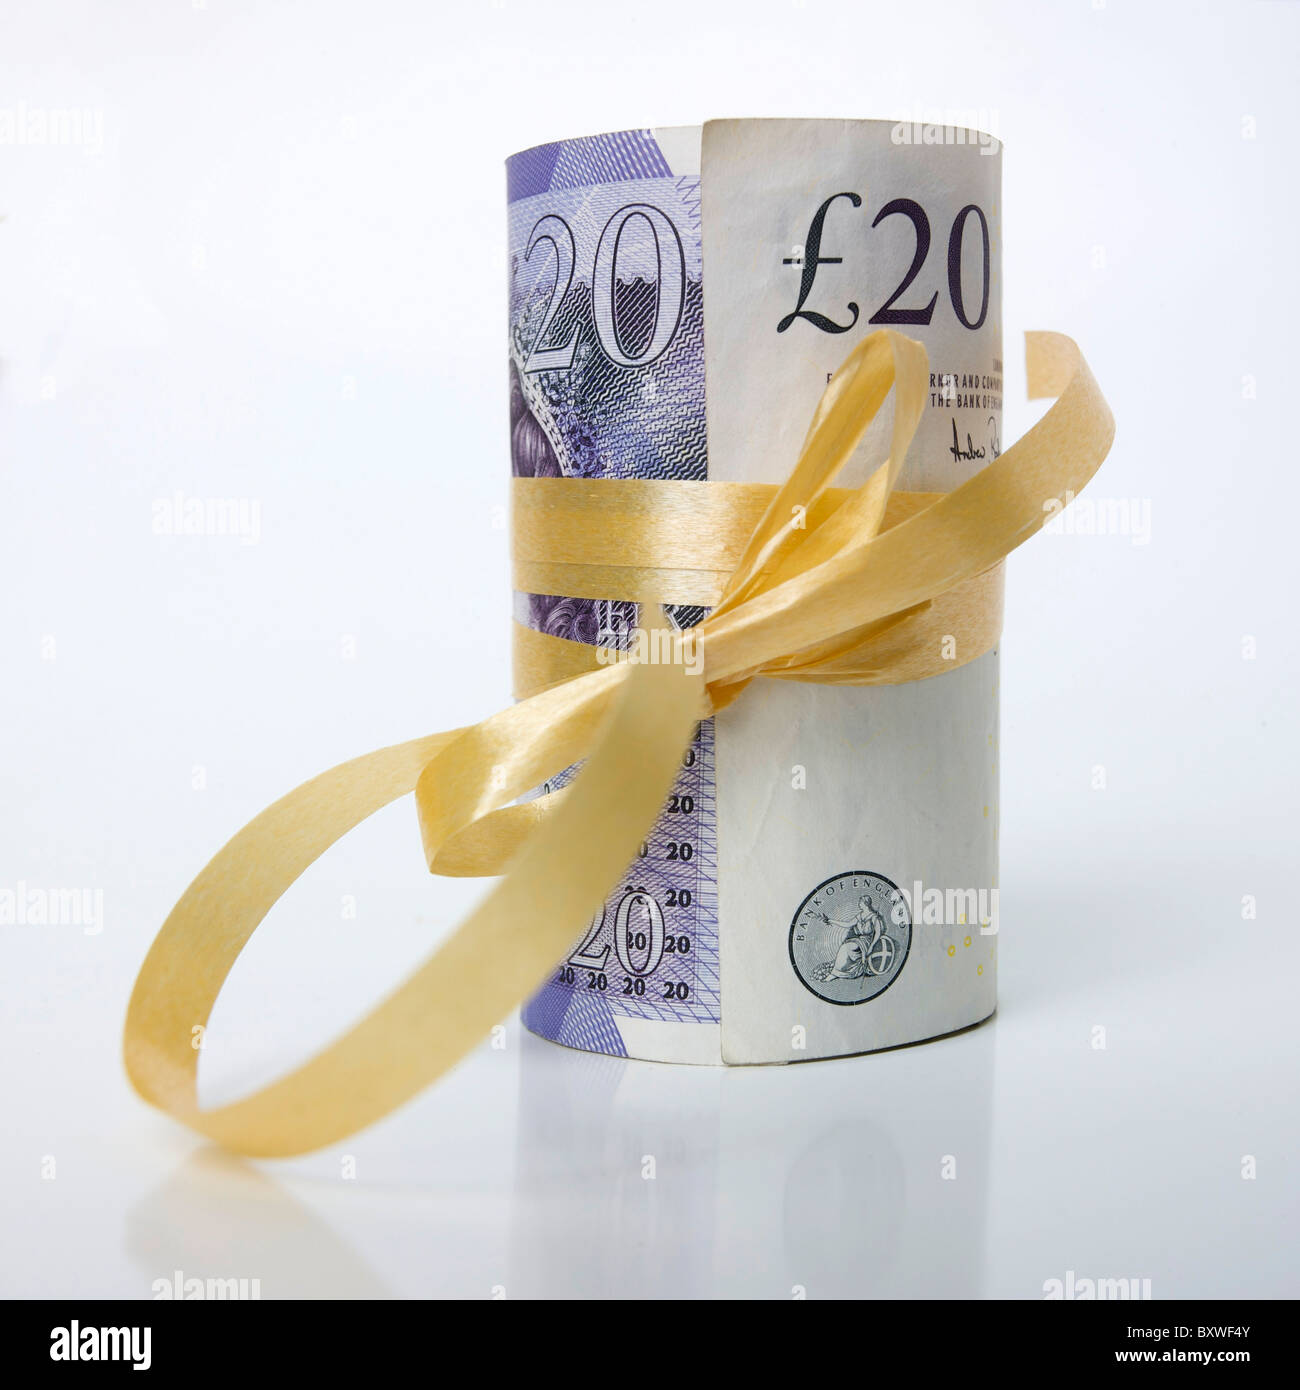 Bündel von Banknoten, Brite/Britin gerollt / UK Pfund Sterling GBP - Geld Geschenk / präsentieren / Einsparungen Konzept. Stockfoto